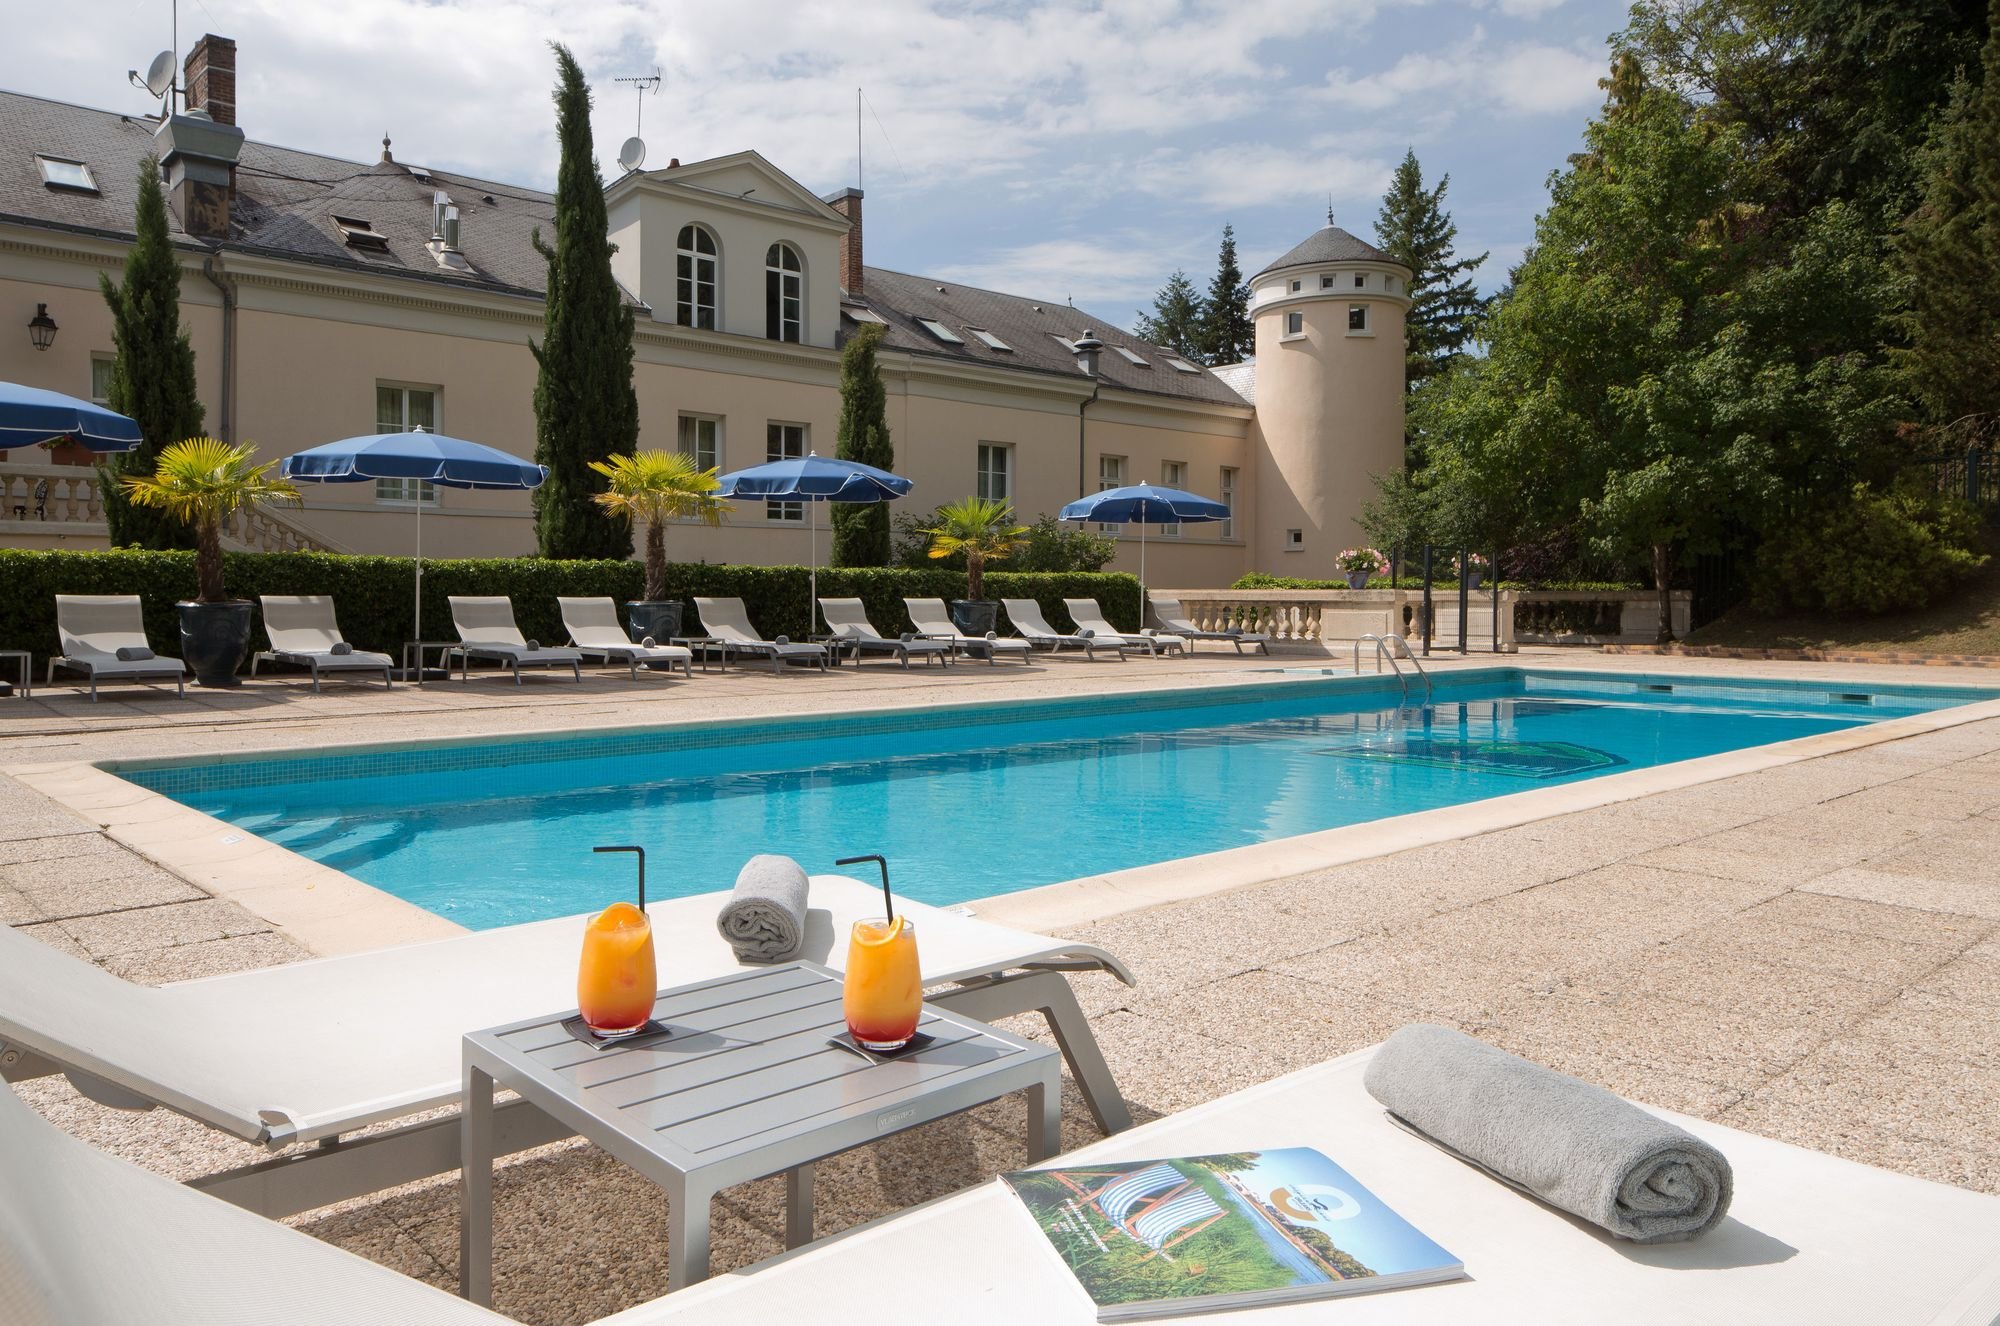 Domaine de Vaugouard | Chateau hotel near Paris